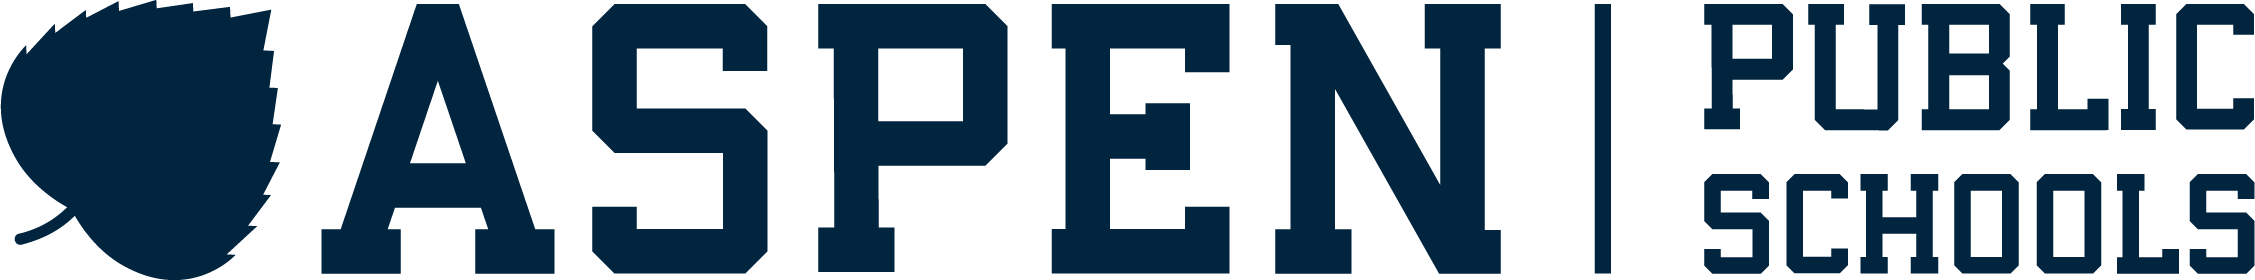 Aspen Public Schools Logo